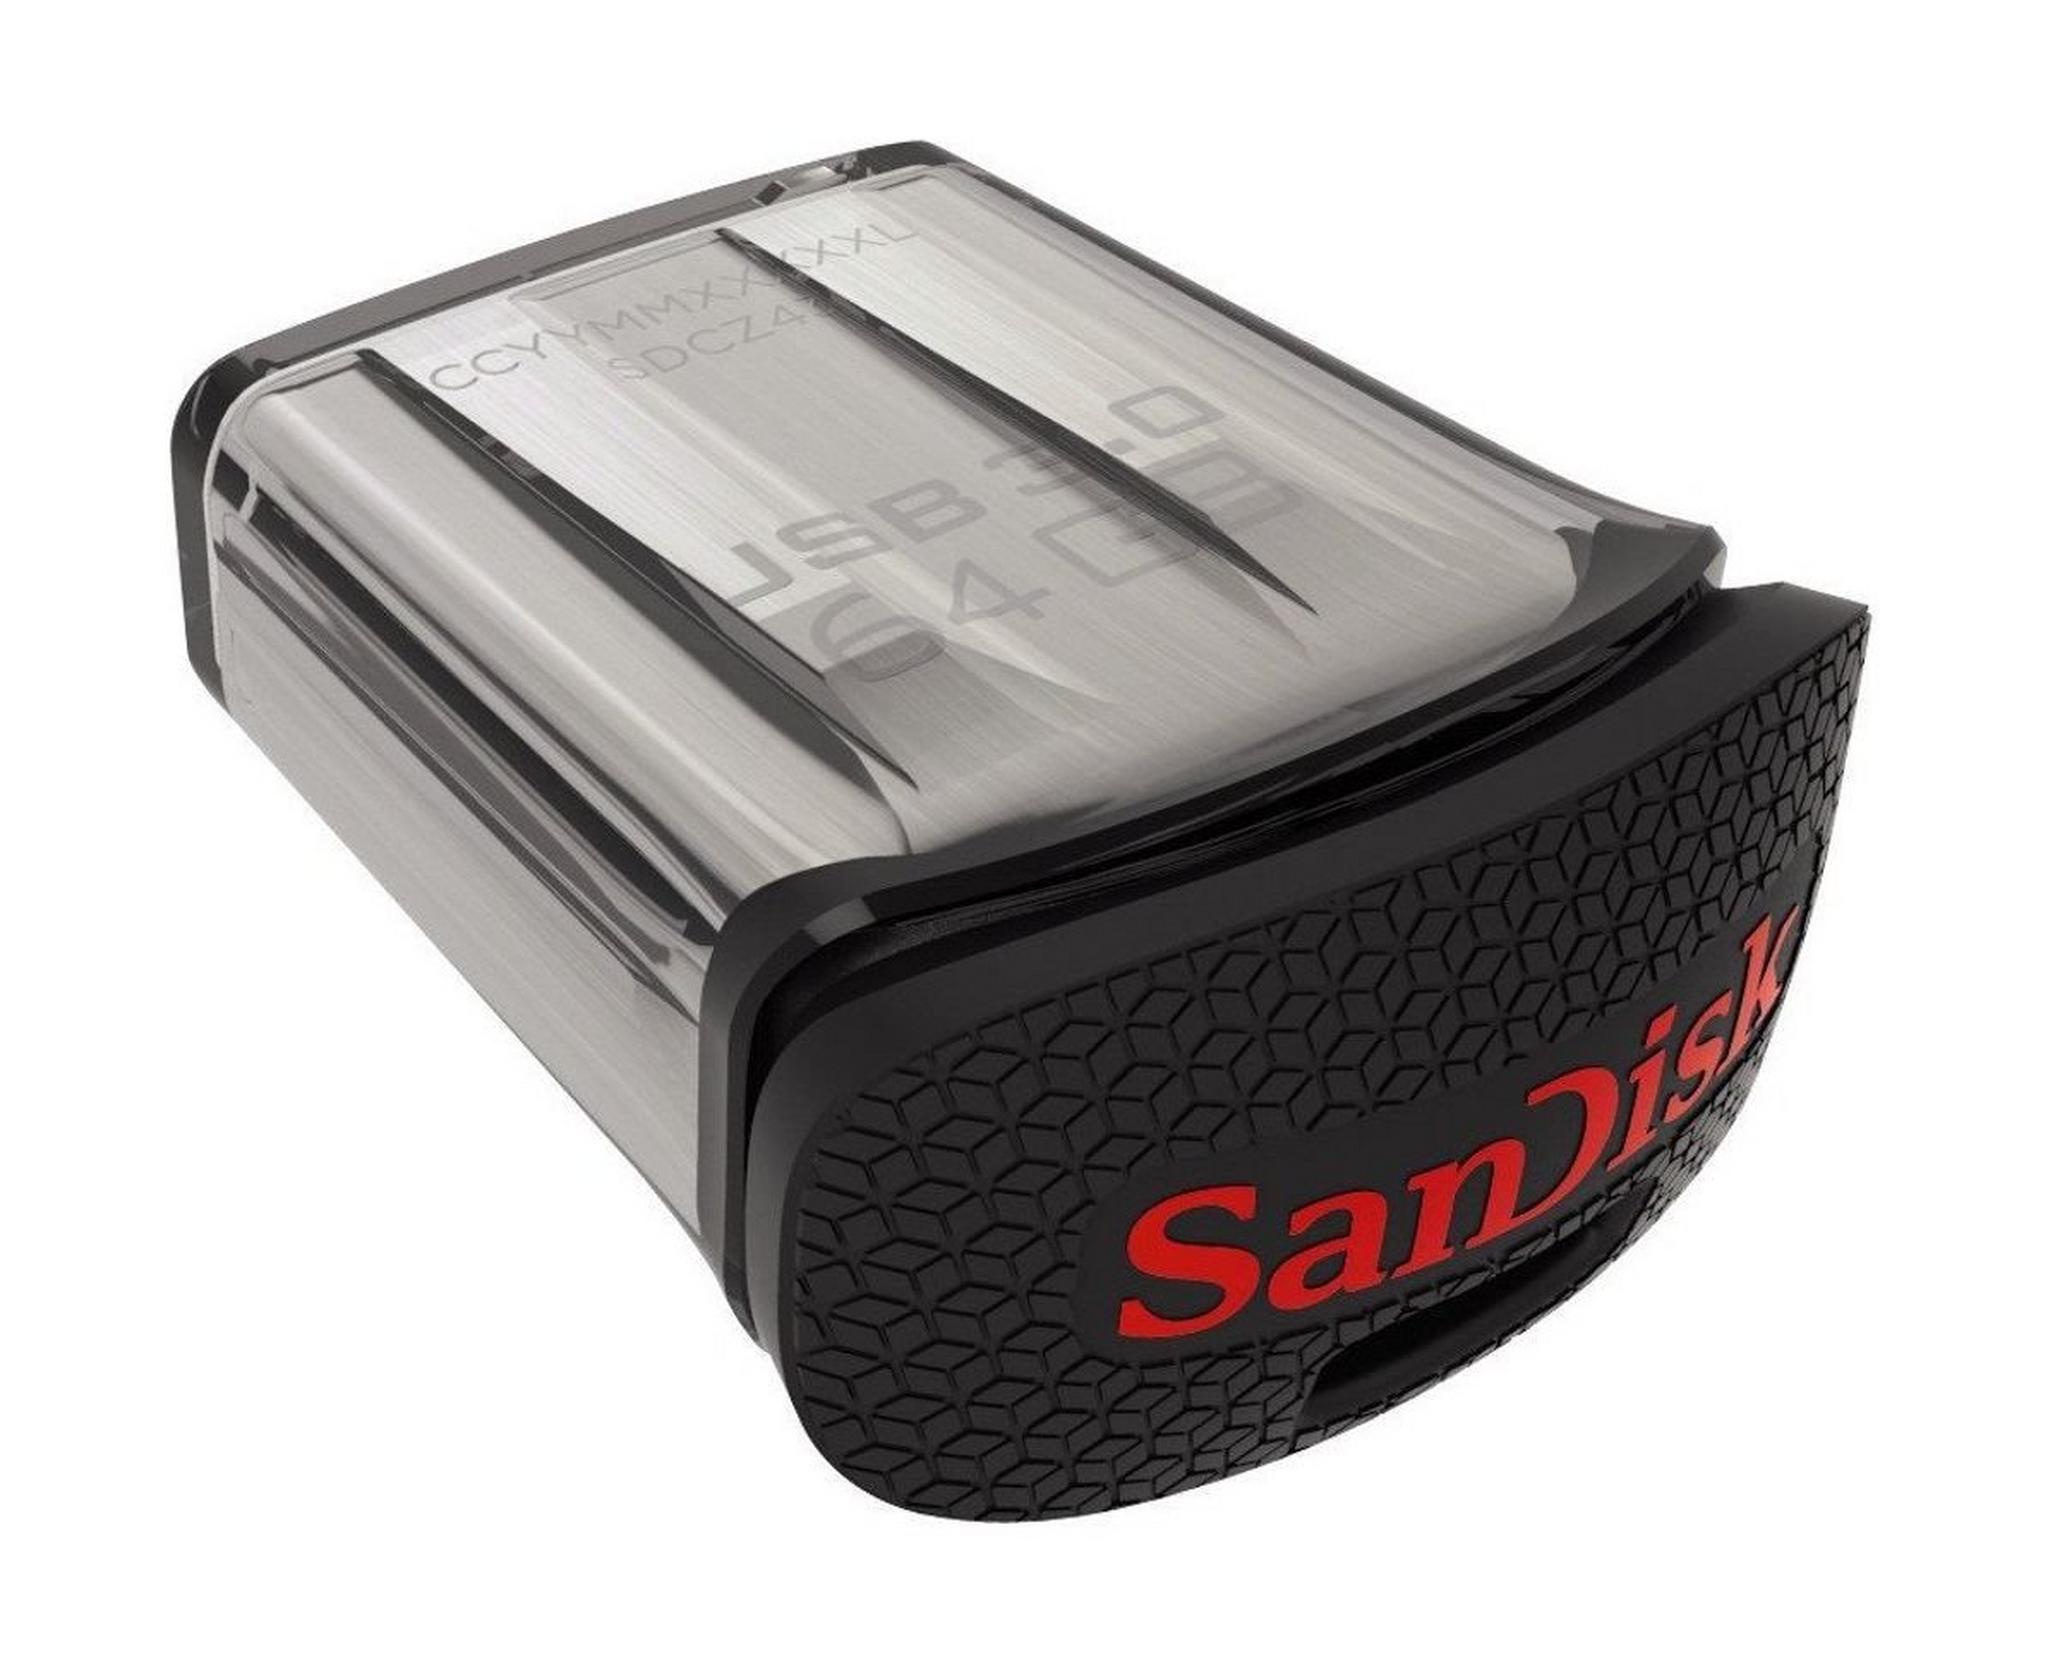 Sandisk Ultra Fit CZ43064GGAM46 64GB USB 3.0 Flash Drive